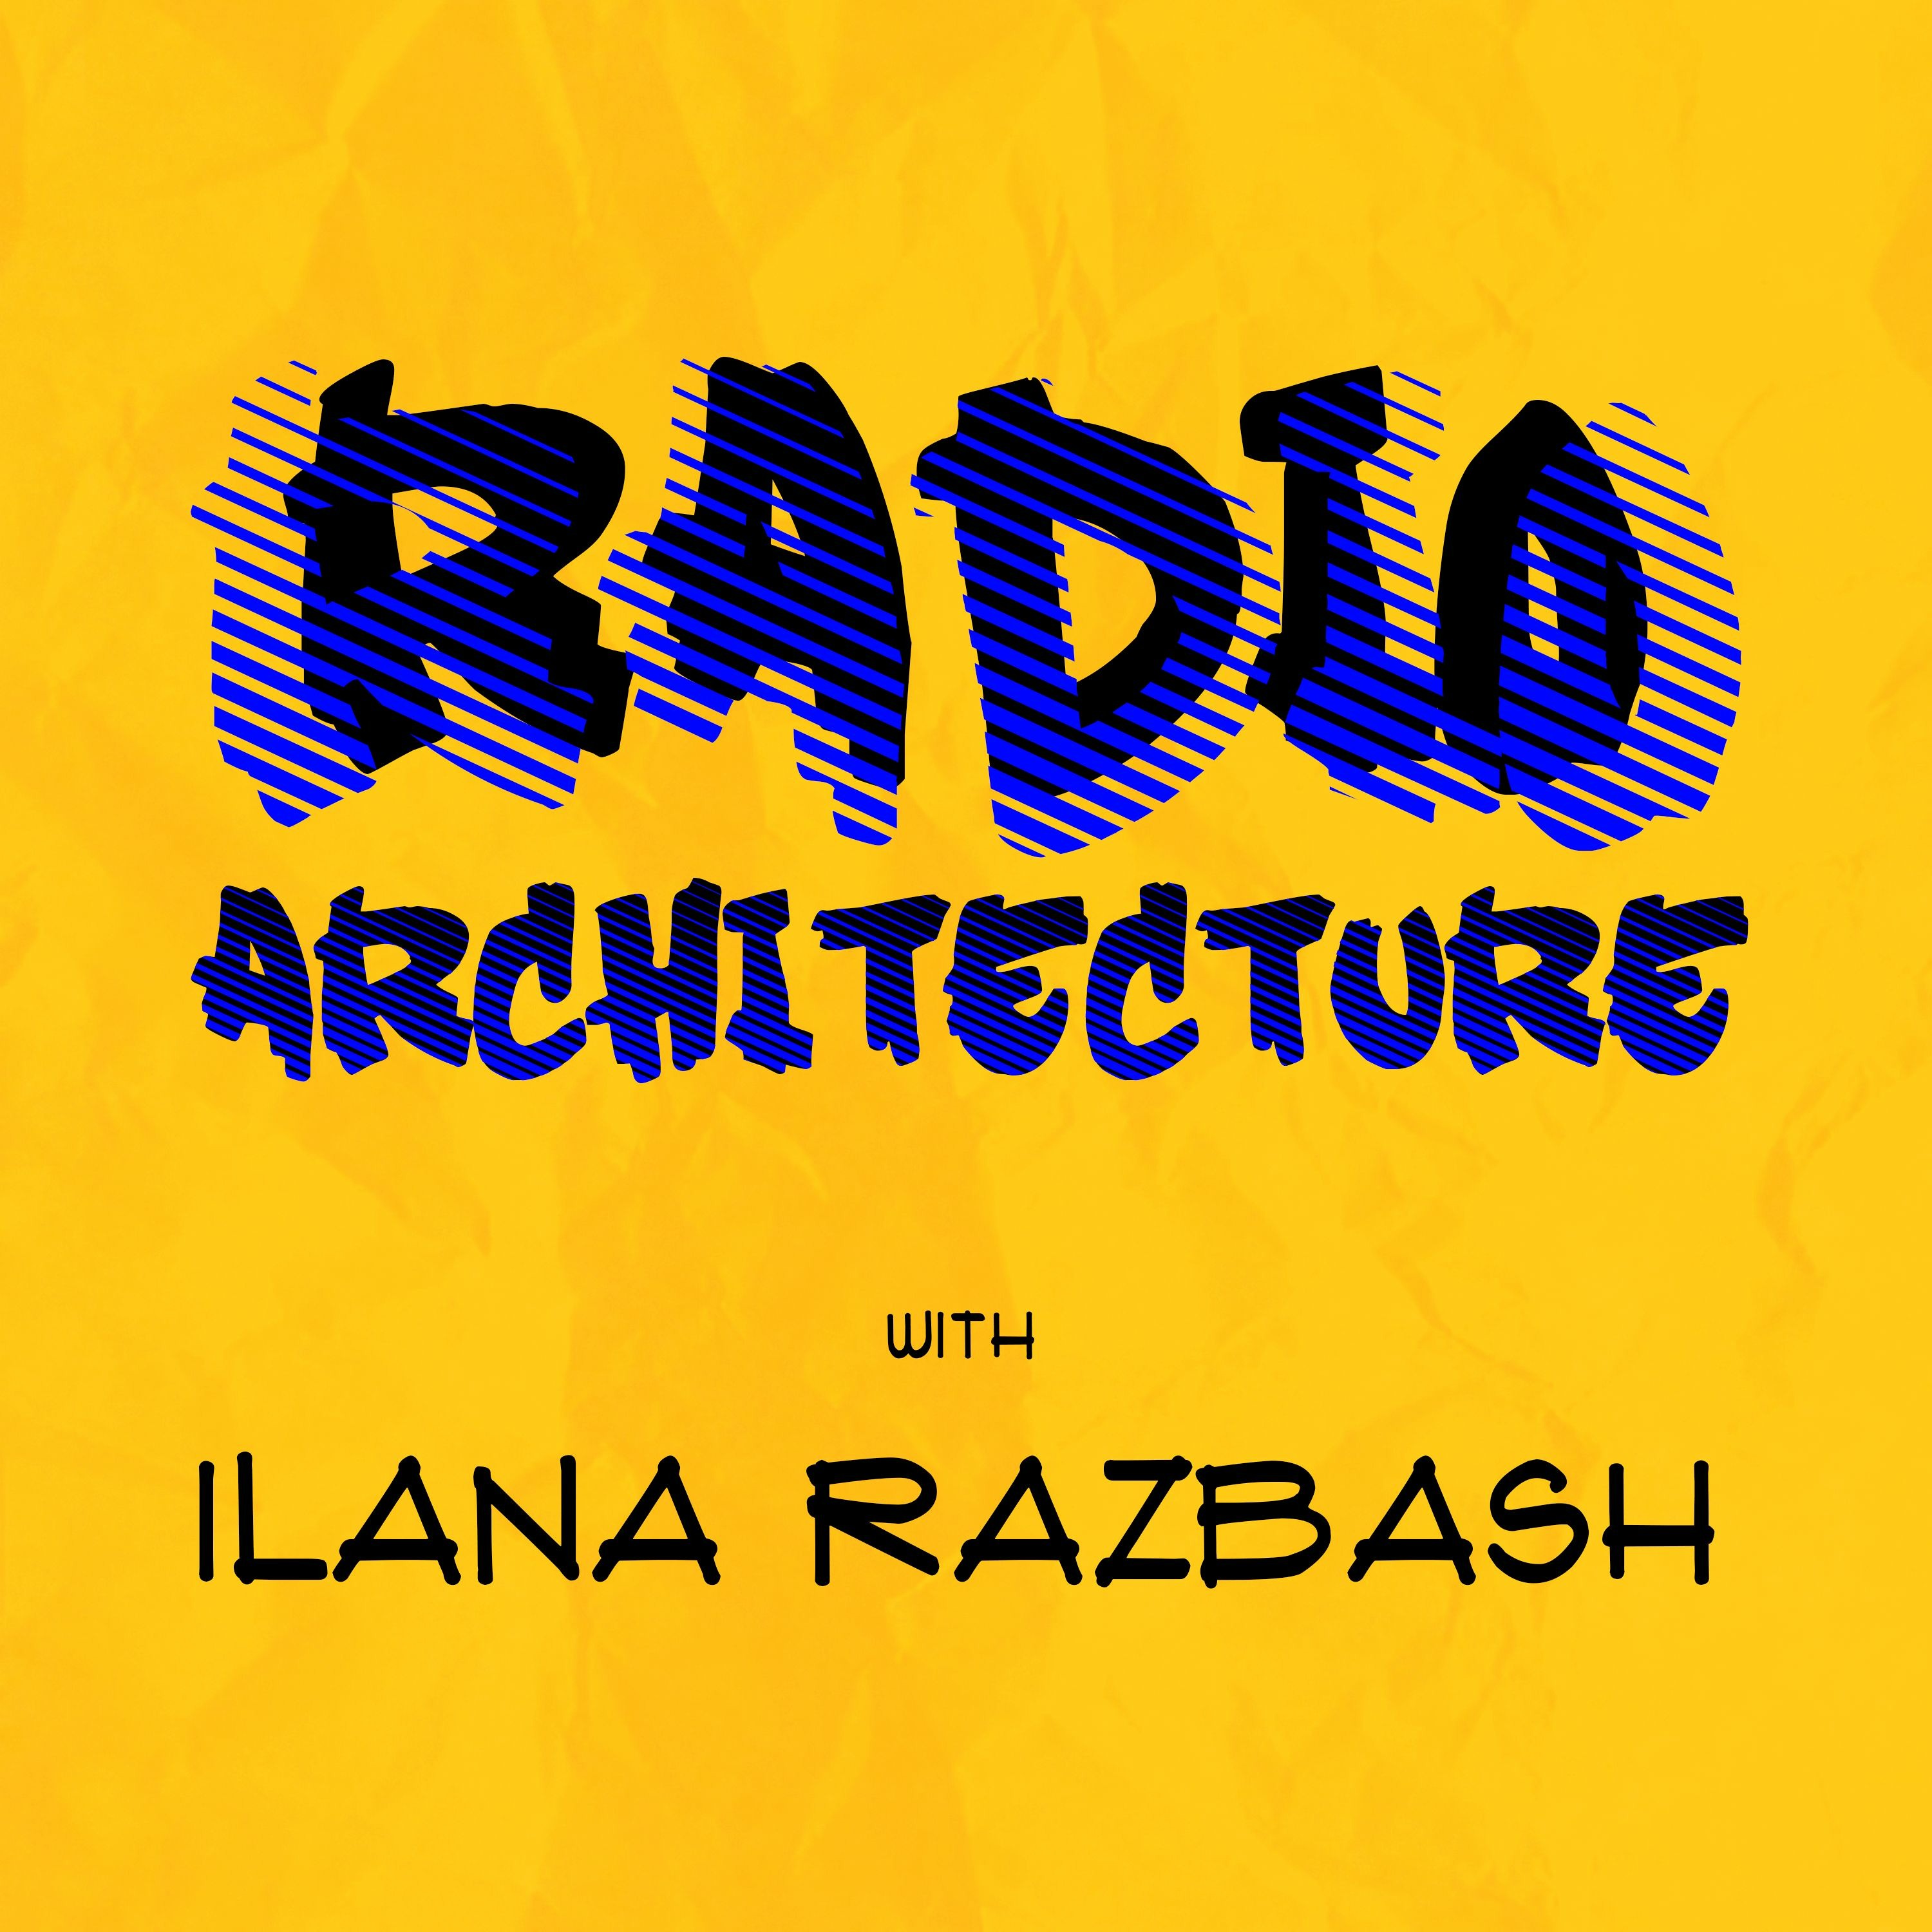 Radio Architecture With Ilana Razbash - Episode 40 (Jenna Davey-Burns)